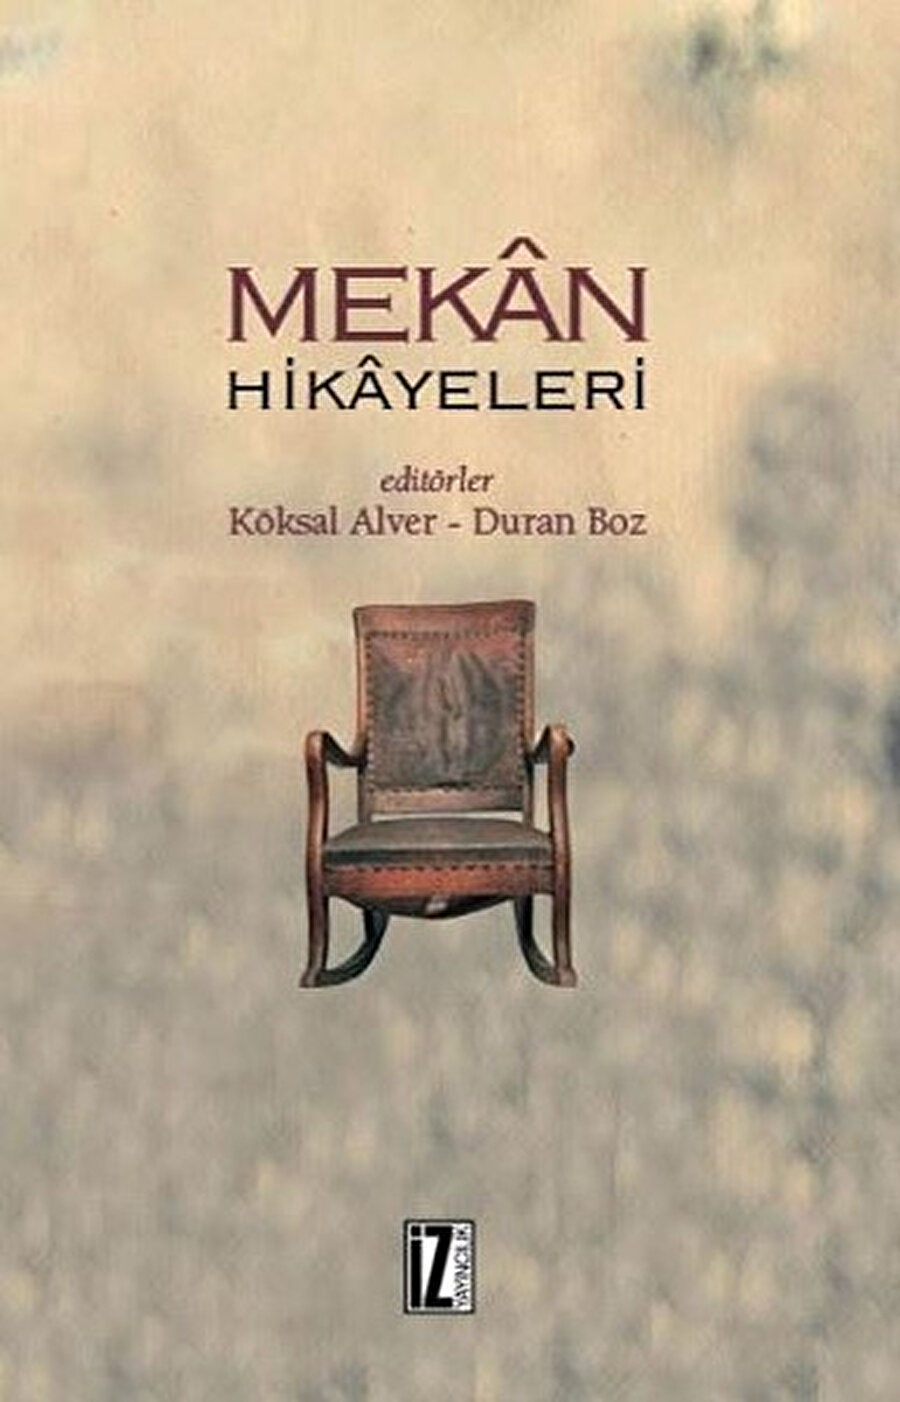 Mekân Hikâyeleri, Türkiye’deki kültür mekânlarında ortaya çıkan bilincin, ruhun, düşüncenin kaydını çıkarıyor. Çok sayıda yazarın makalelerinden oluşan kitap, nitelikli bir toplumsal hafıza çalışması örneği sunuyor.